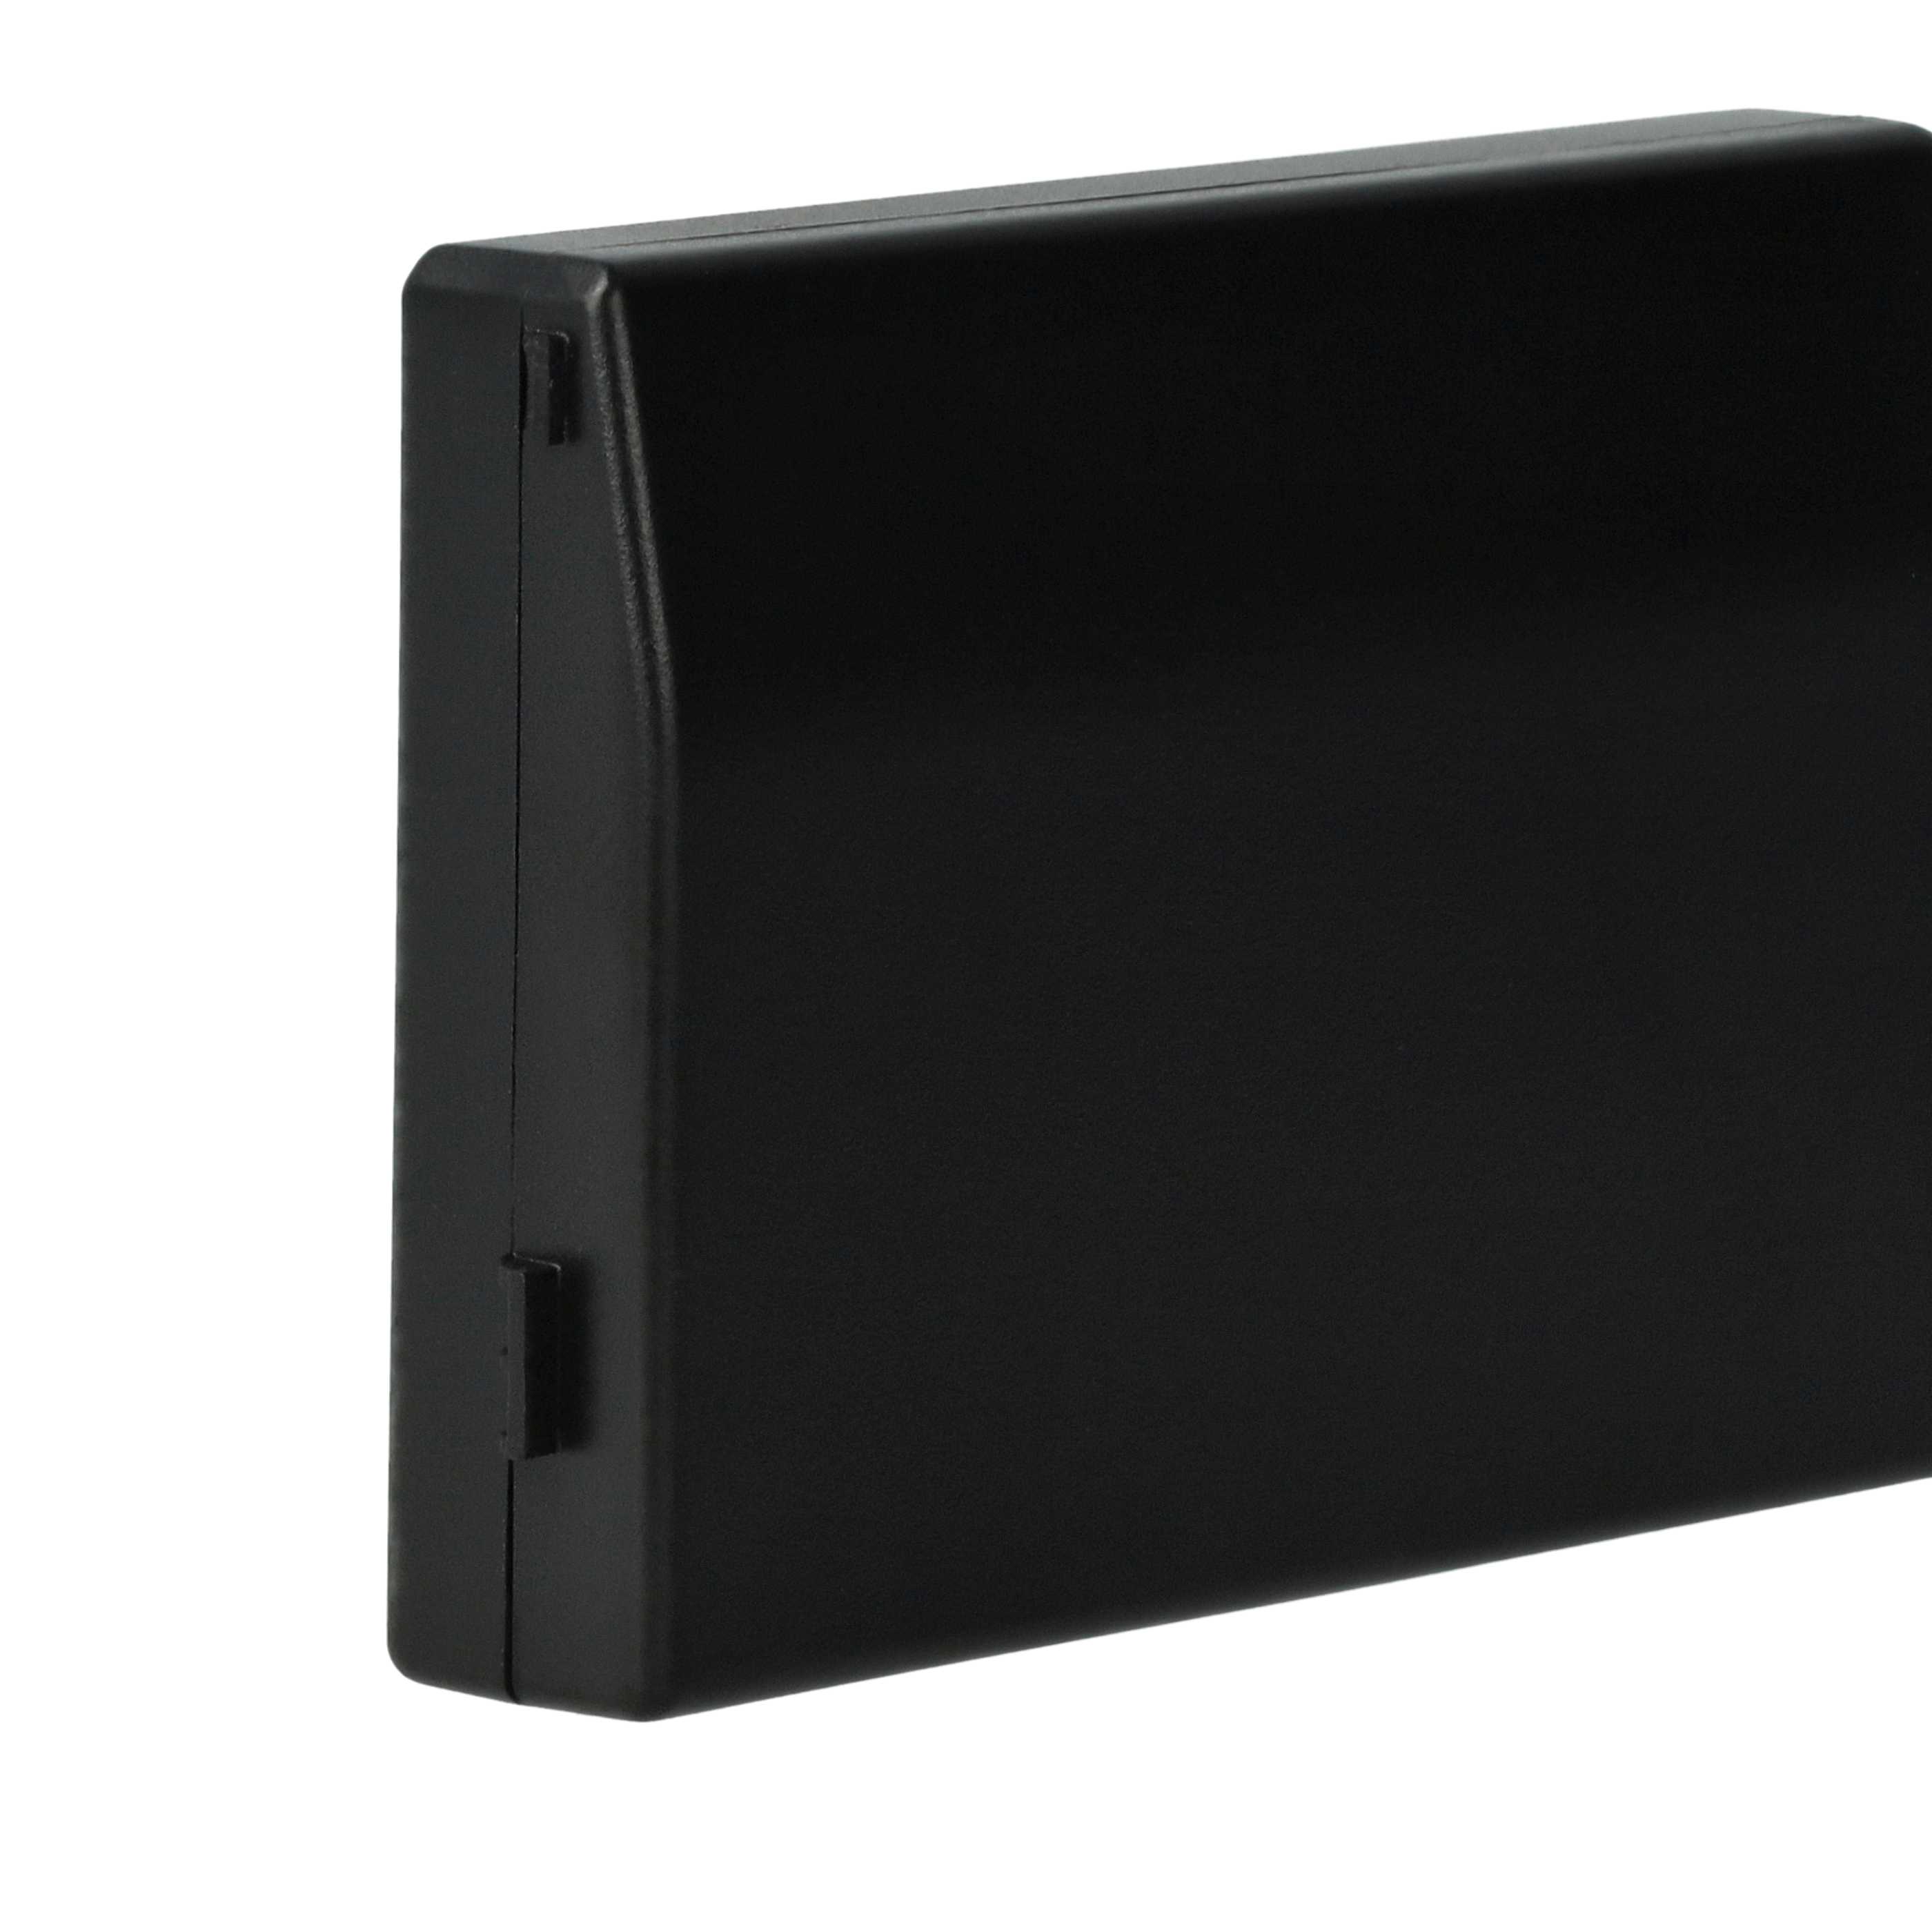 Spielekonsole-Akku als Ersatz für Sony PSP-S110 - 1200 mAh, 3,7 V